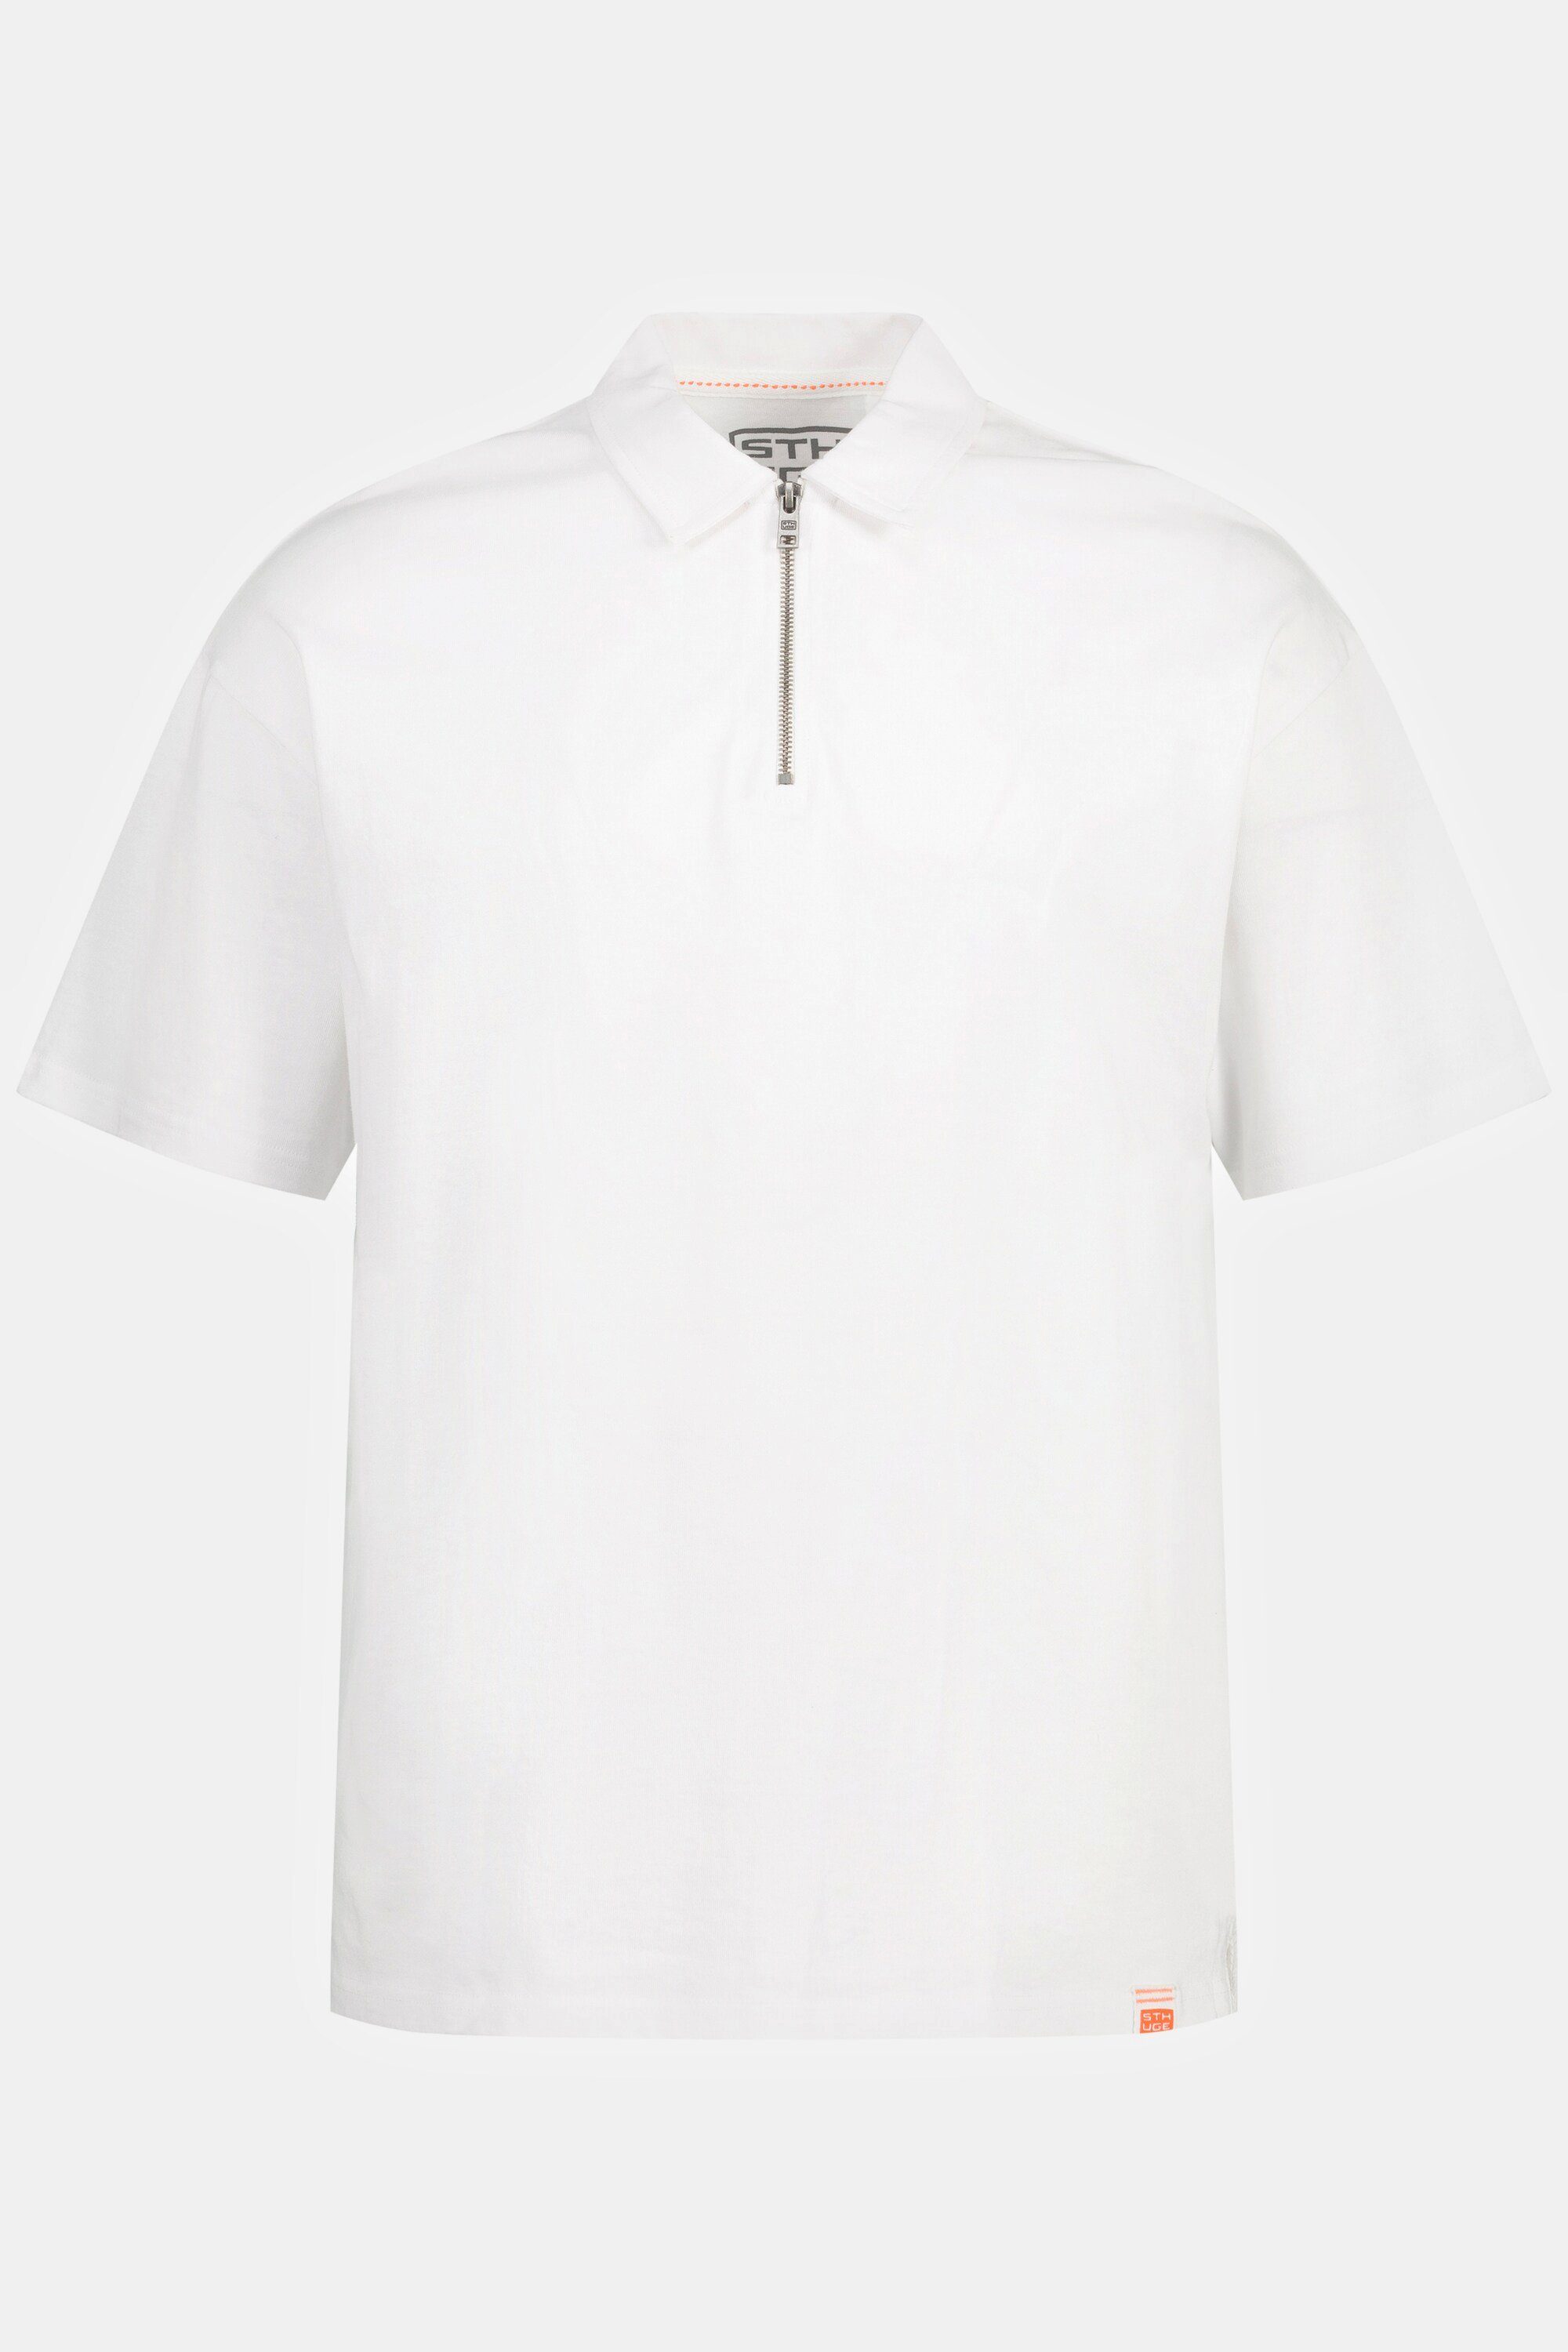 STHUGE Jersey Halbarm Zipper 8 bis XL Poloshirt STHUGE Poloshirt